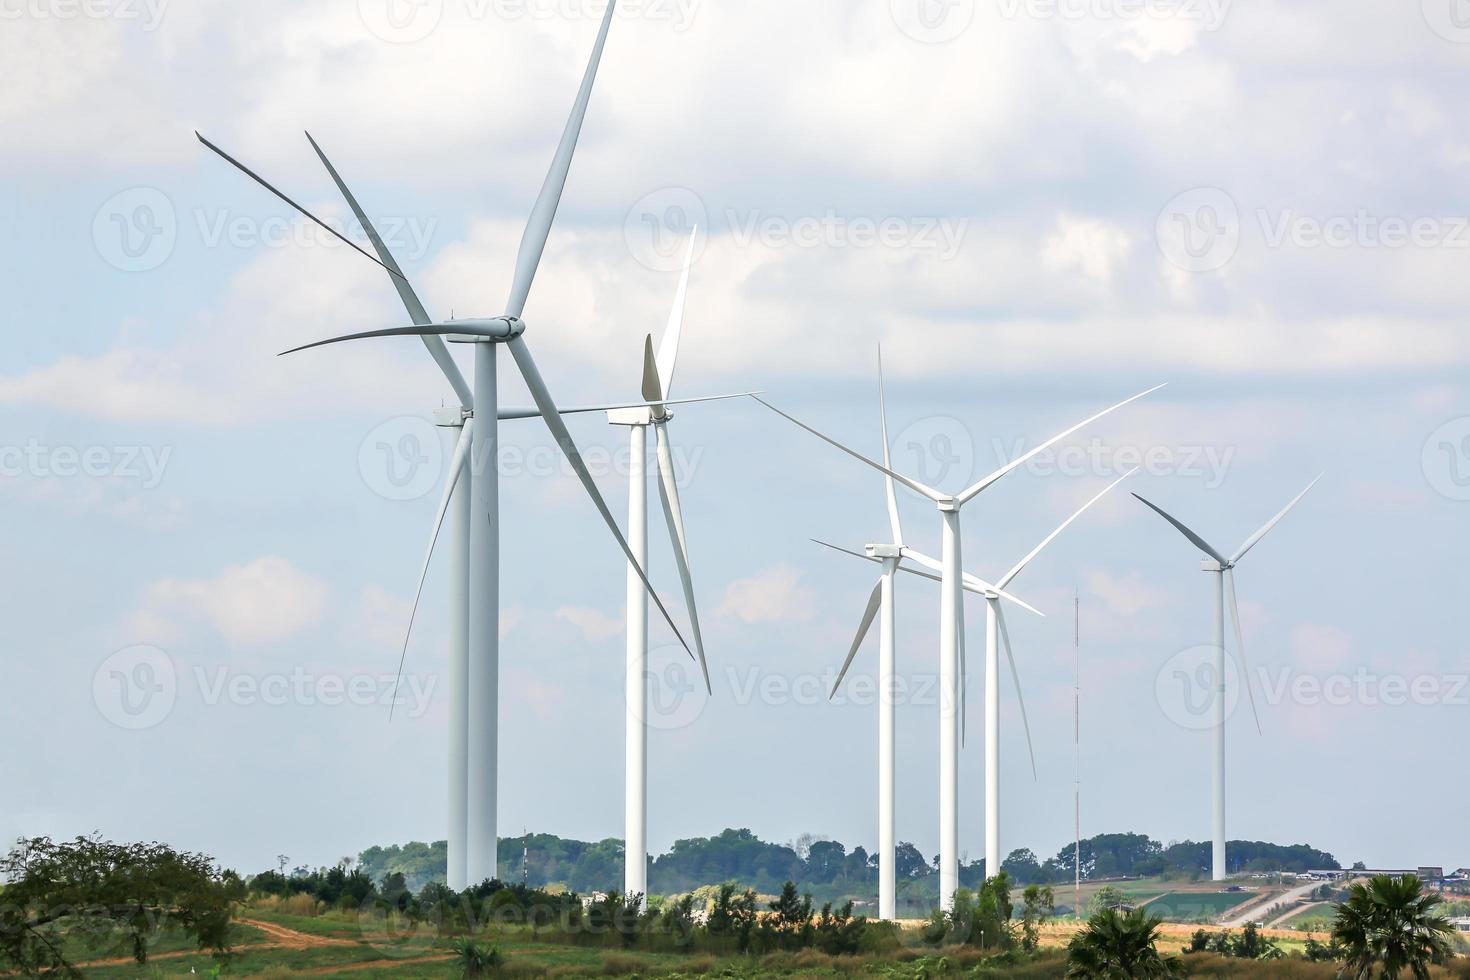 l'énergie éolienne fonctionne, ciel bleu, concept de puissance énergétique photo